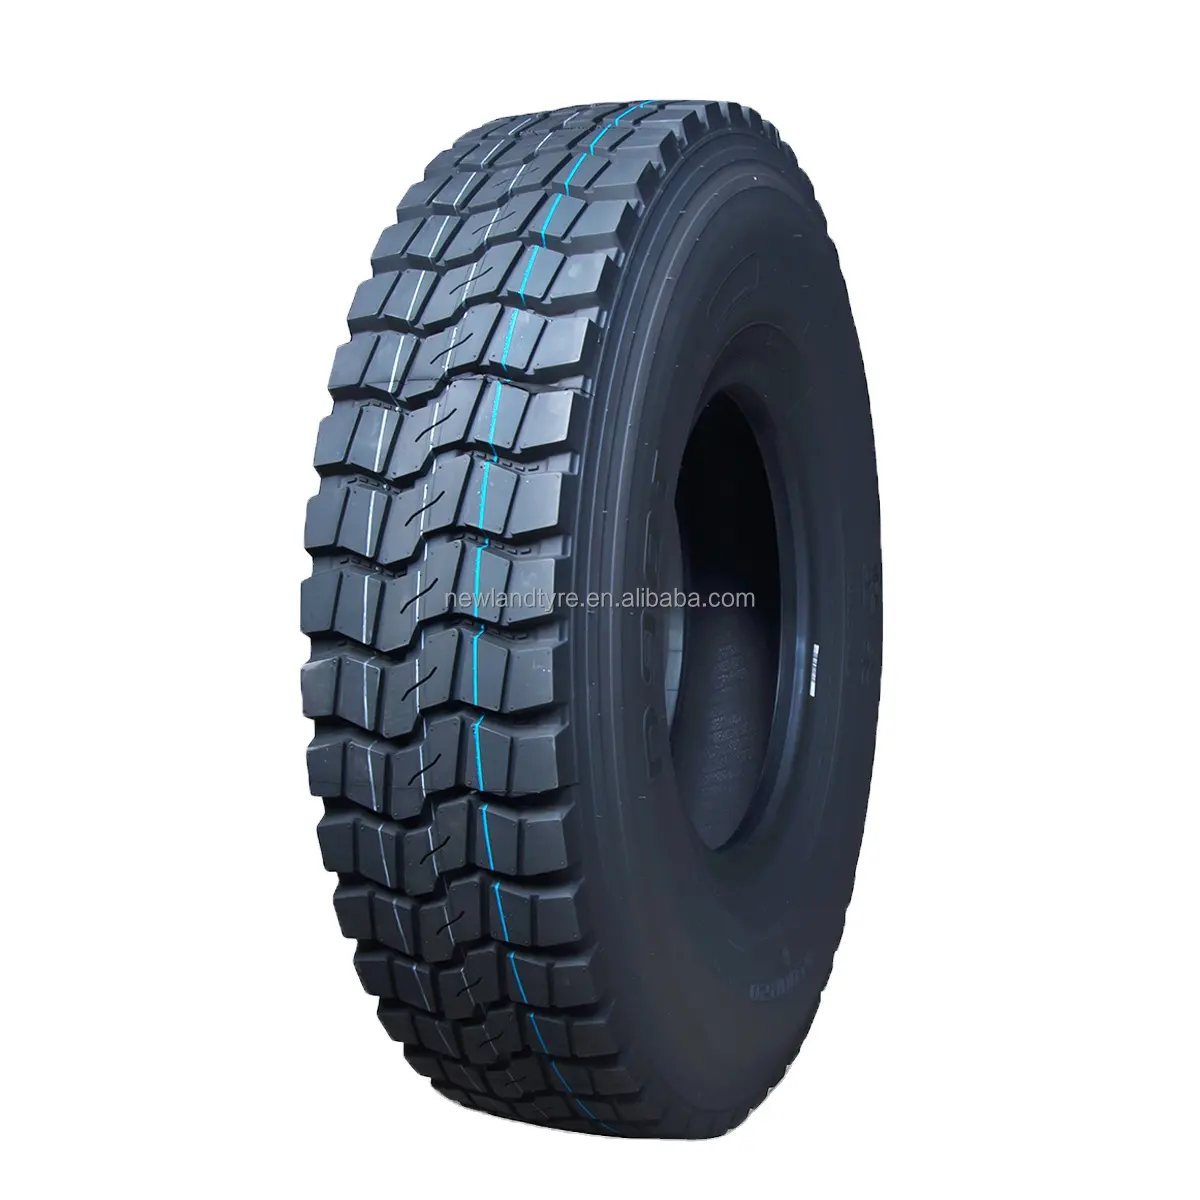 Nouvelle usine de pneus en chine, achetez des pneus directement depuis la chine, pneu de camion 12r22.5